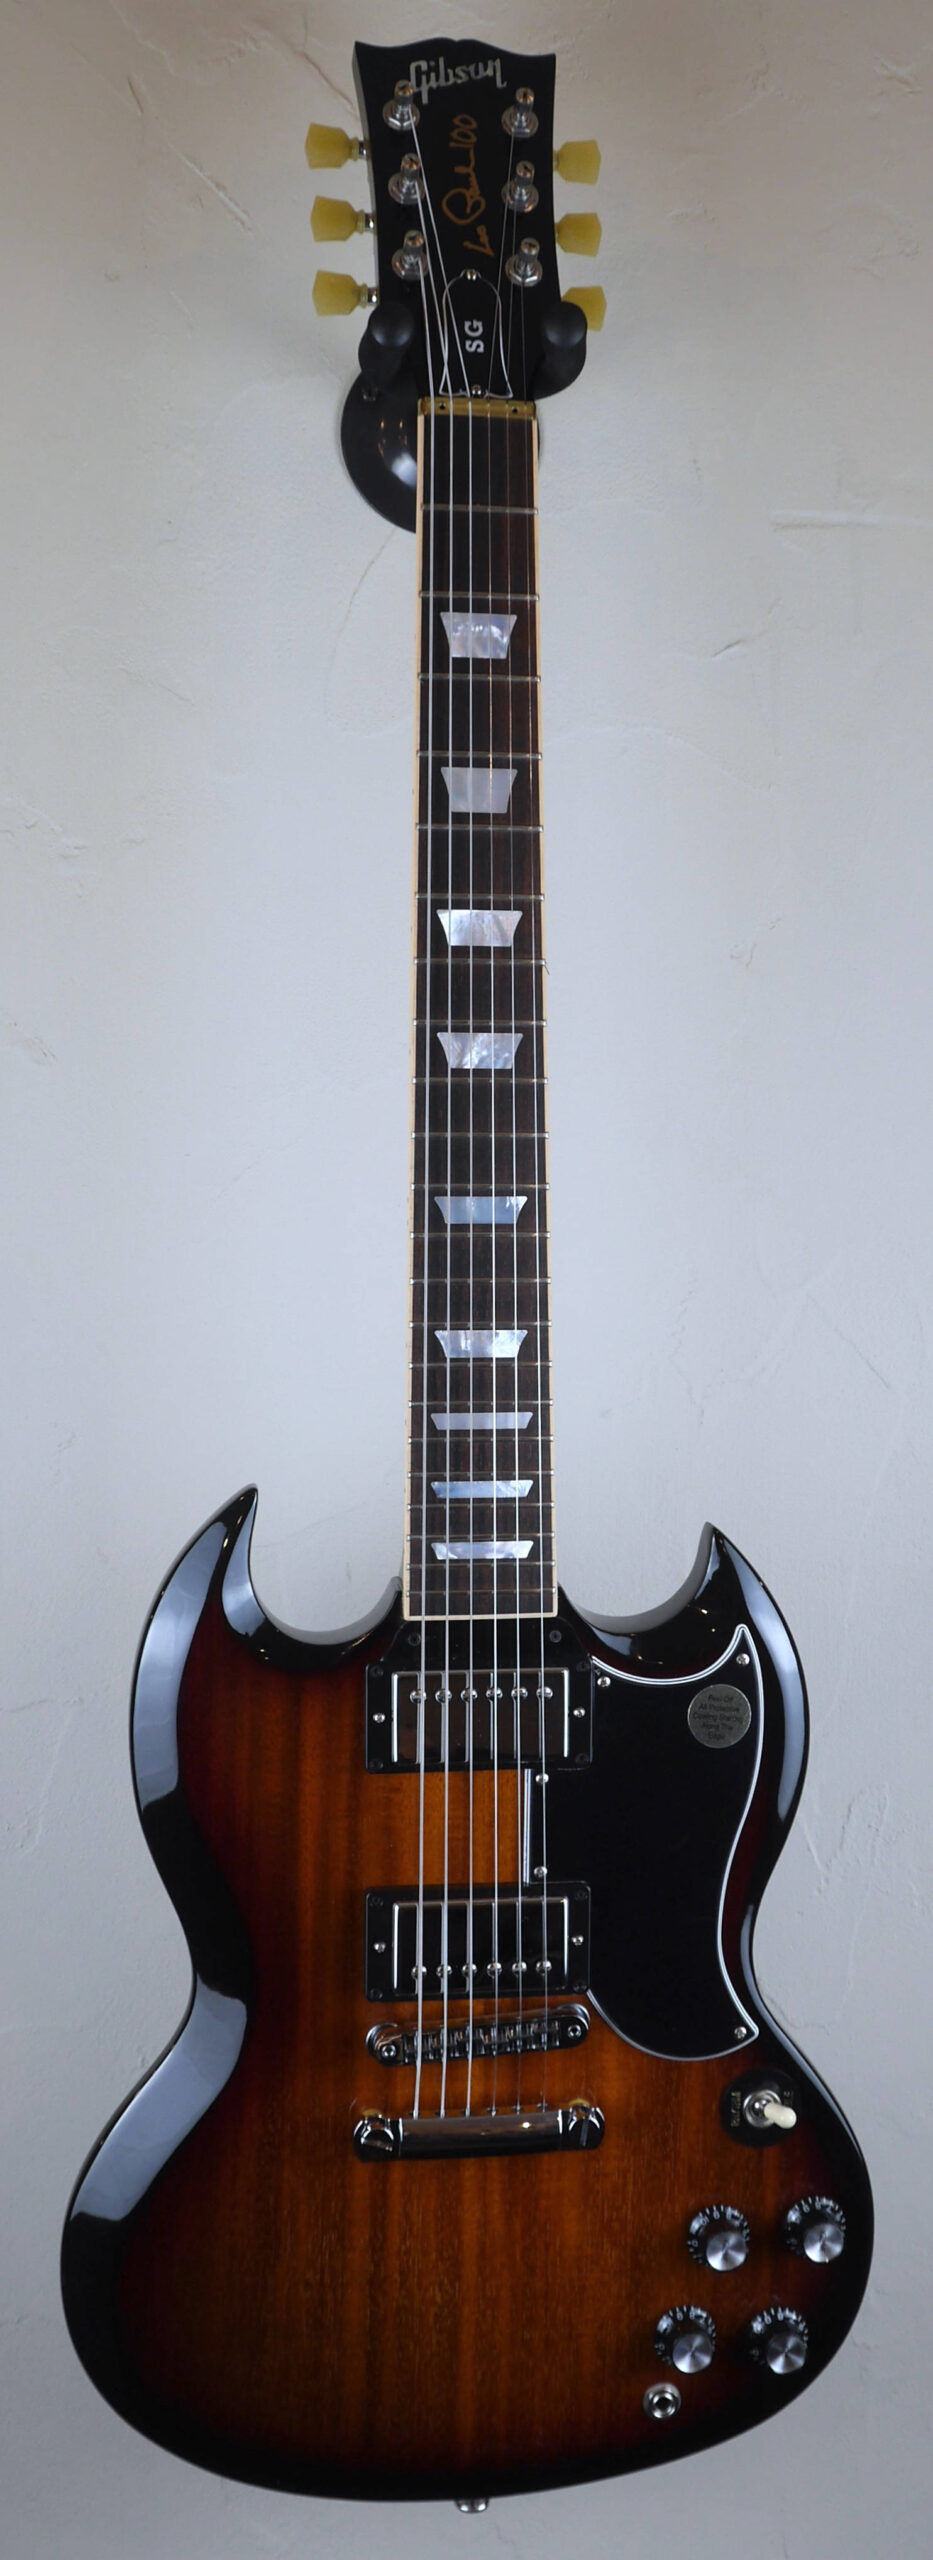 Gibson SG Standard 27/02/2015 Fireburst 2